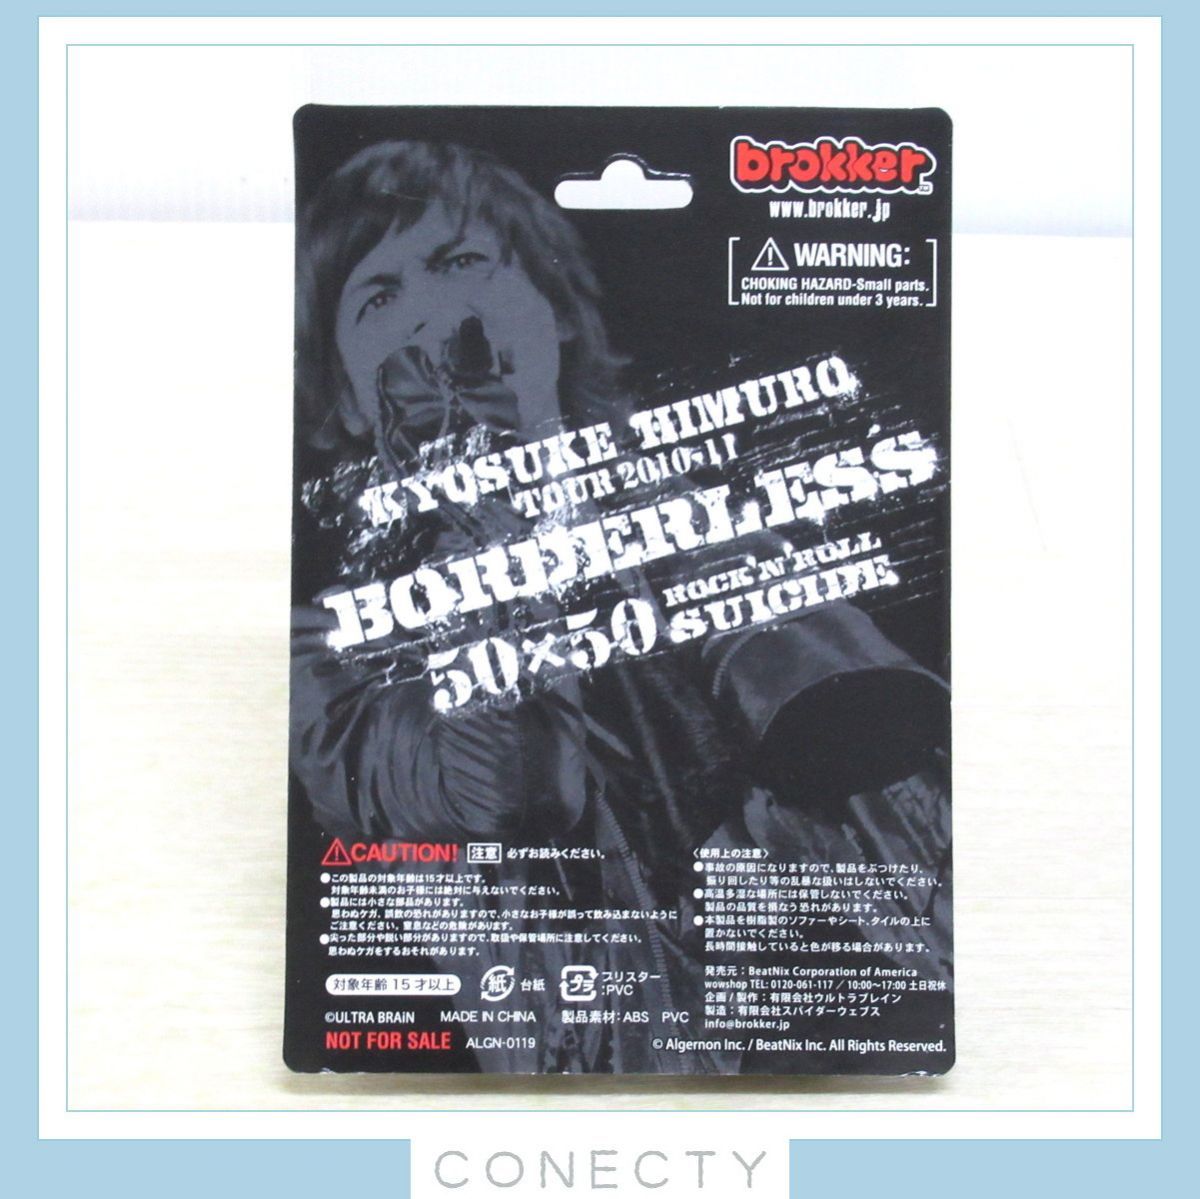 氷室京介 TOUR 2010-11 BORDERLESS Blu-ray フィギュア付き - ブルーレイ